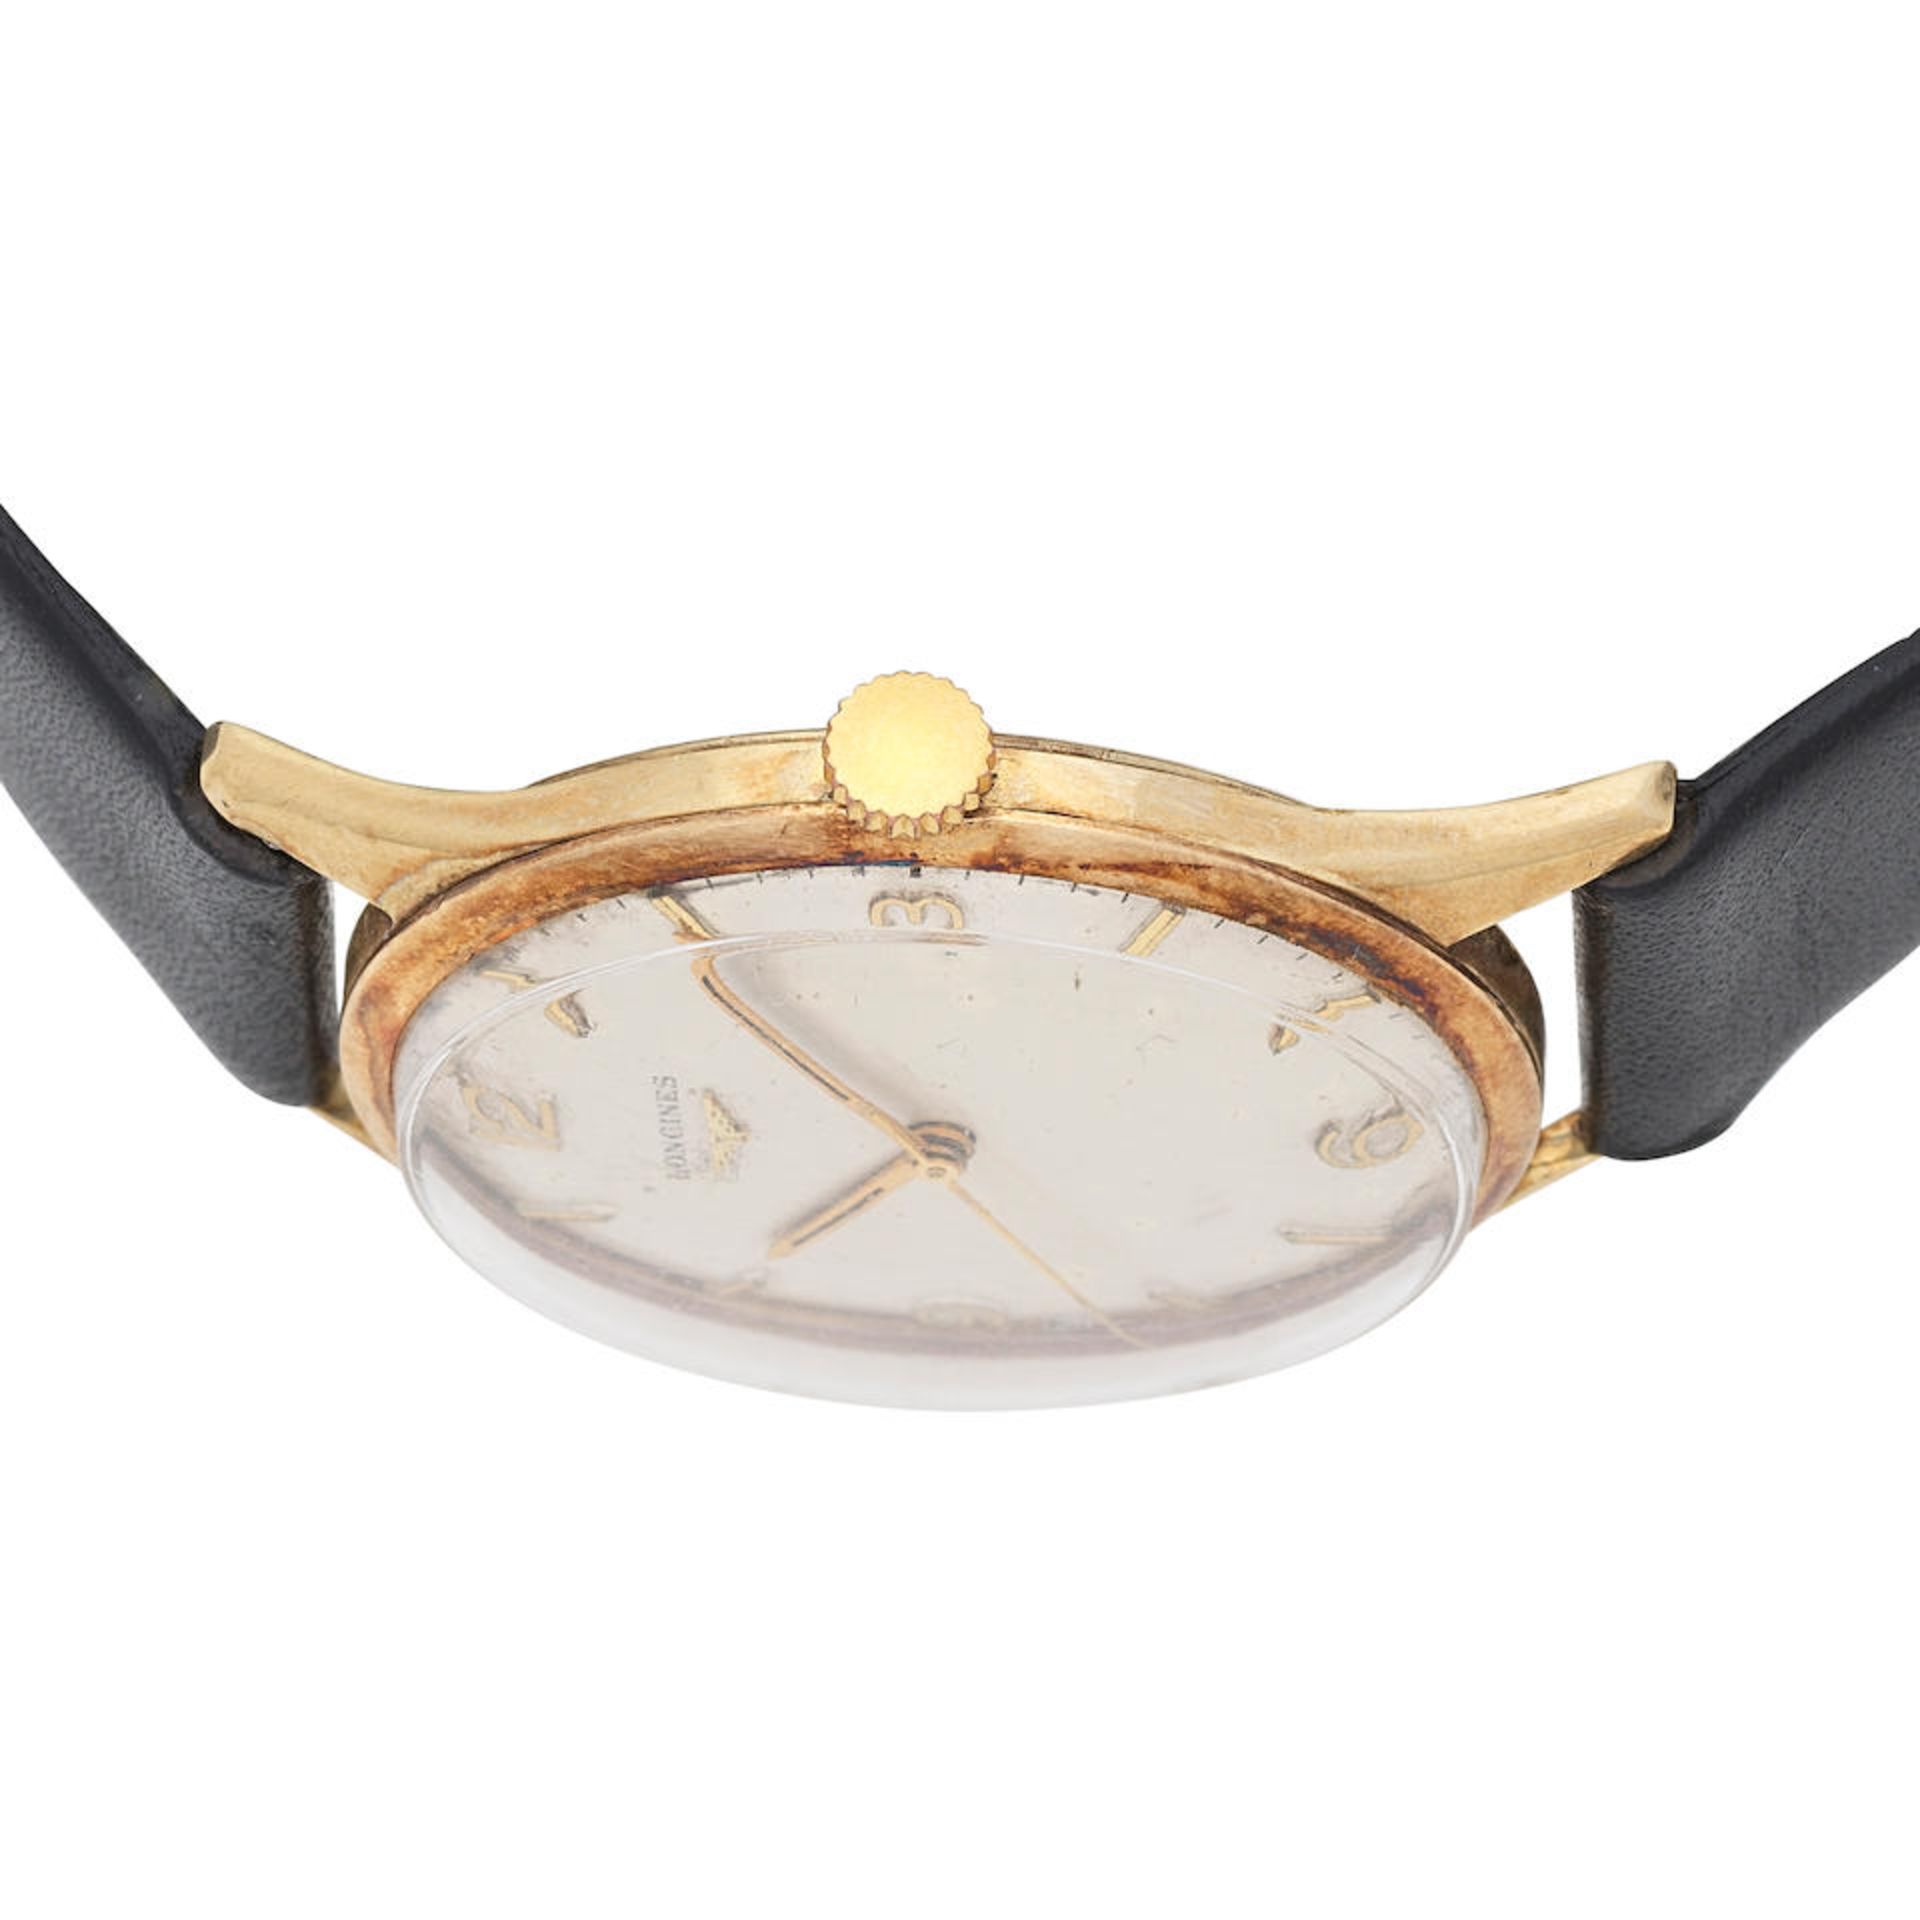 Longines. A 9K gold manual wind wristwatch Ref: 6986 1, Circa 1959 (Hallmarks indistinct) - Bild 3 aus 5